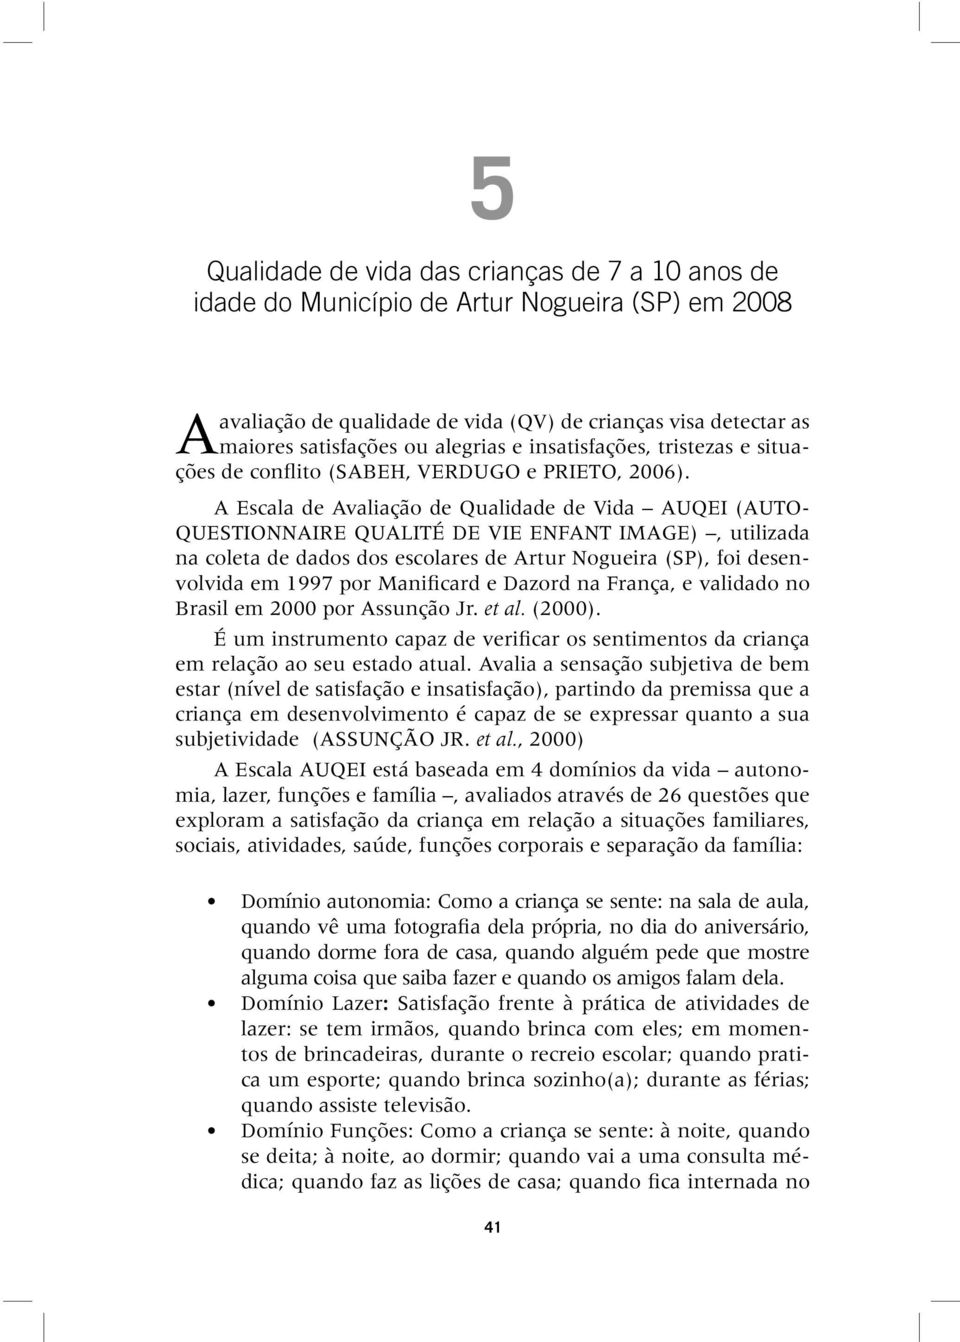 A Escala de Avaliação de Qualidade de Vida AUQEI (AUTO- QUESTIONNAIRE QUALITÉ DE VIE ENFANT IMAGE), utilizada na coleta de dados dos escolares de Artur Nogueira (SP), foi desenvolvida em 1997 por